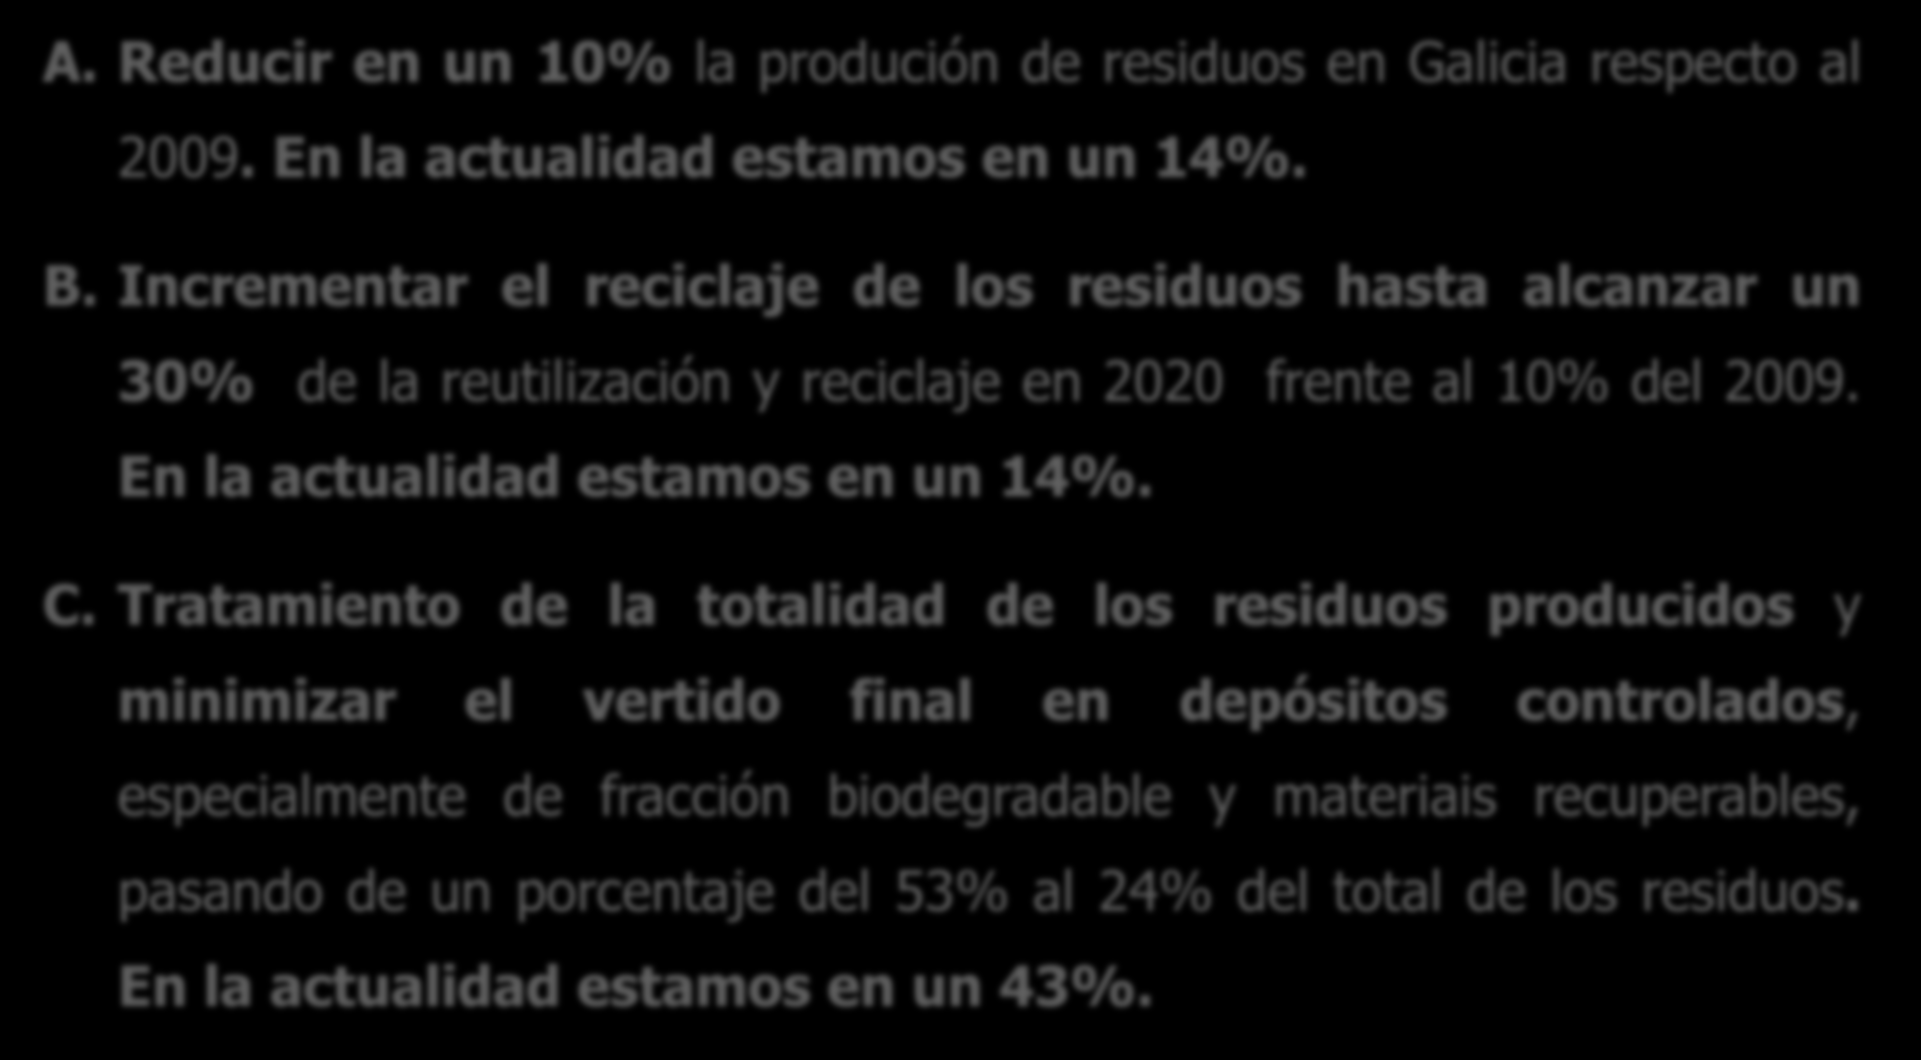 OBJETIVOS ESTRATEGICOS PLAN 2010-2020. SITUACION DE GALICIA A. Reducir en un 10% la produción de residuos en Galicia respecto al 2009. En la actualidad estamos en un 14%. B.